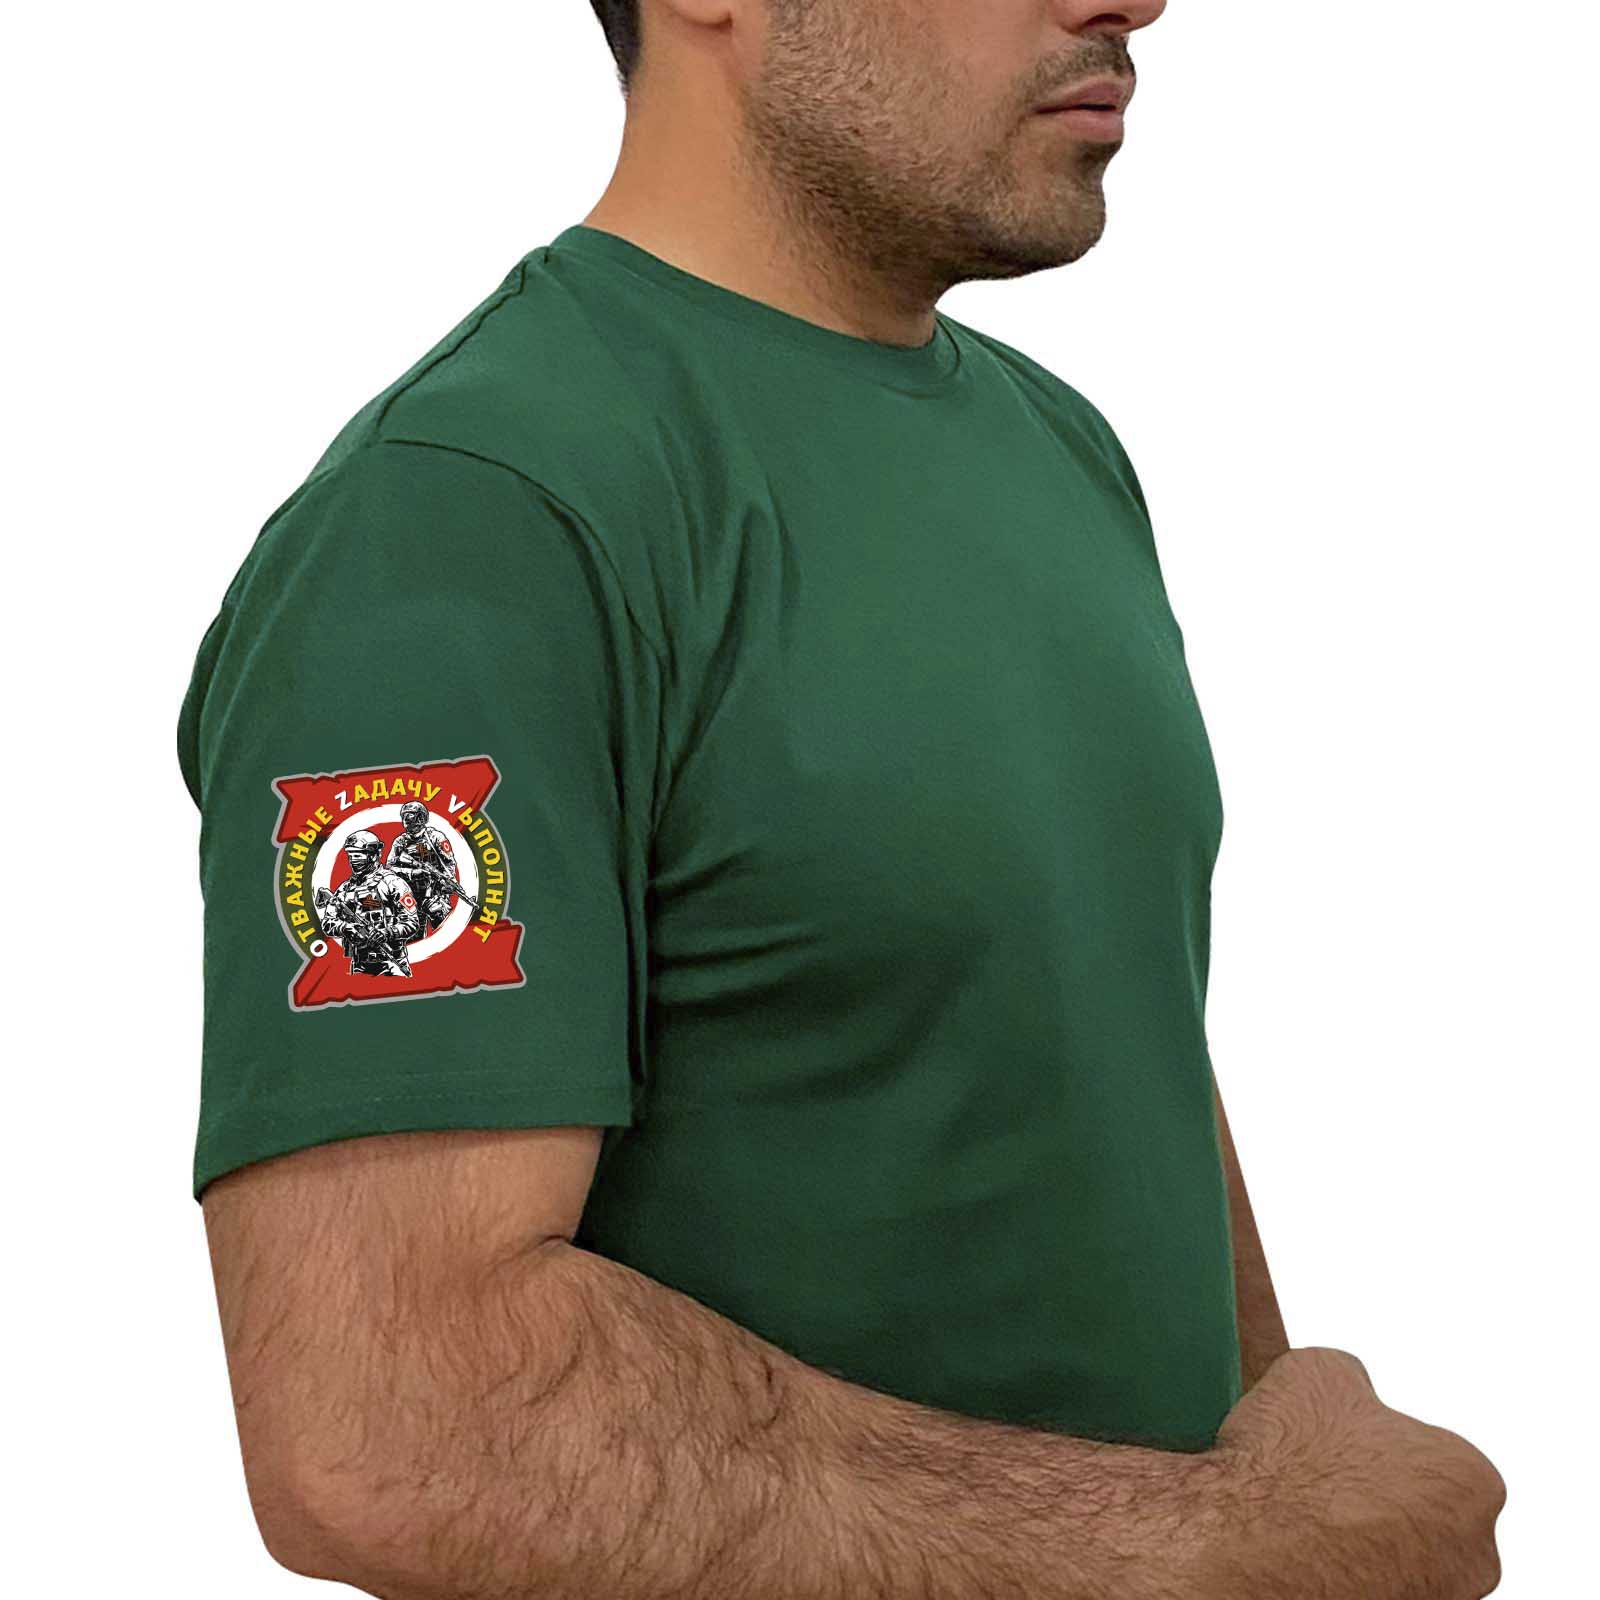  Зелёная футболка с термотрансфером "Отважные Zадачу Vыполнят" на рукаве